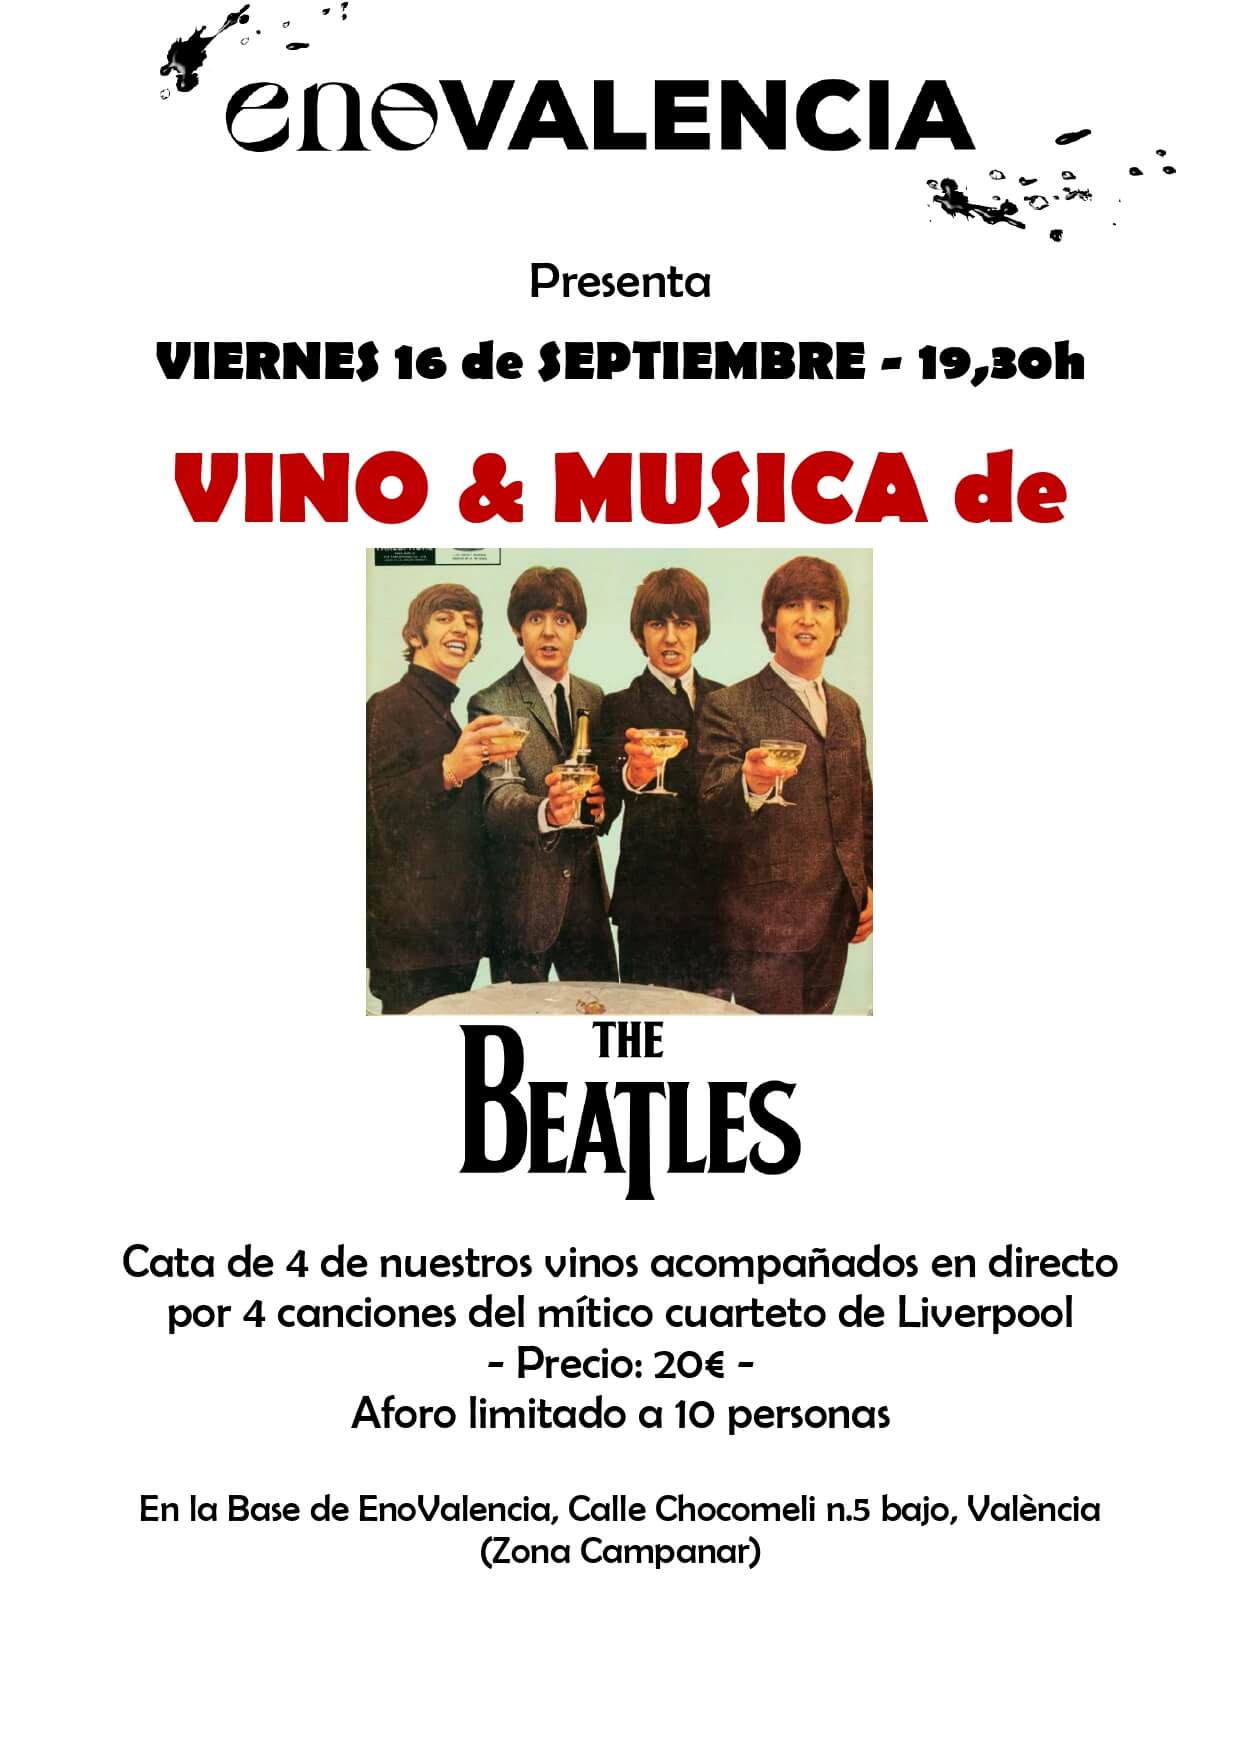 Vino y música 4 Vinos con 4 Canciones de Los Beatles (Evento) EnoValencia - Cata, eventos y venta de vino 5